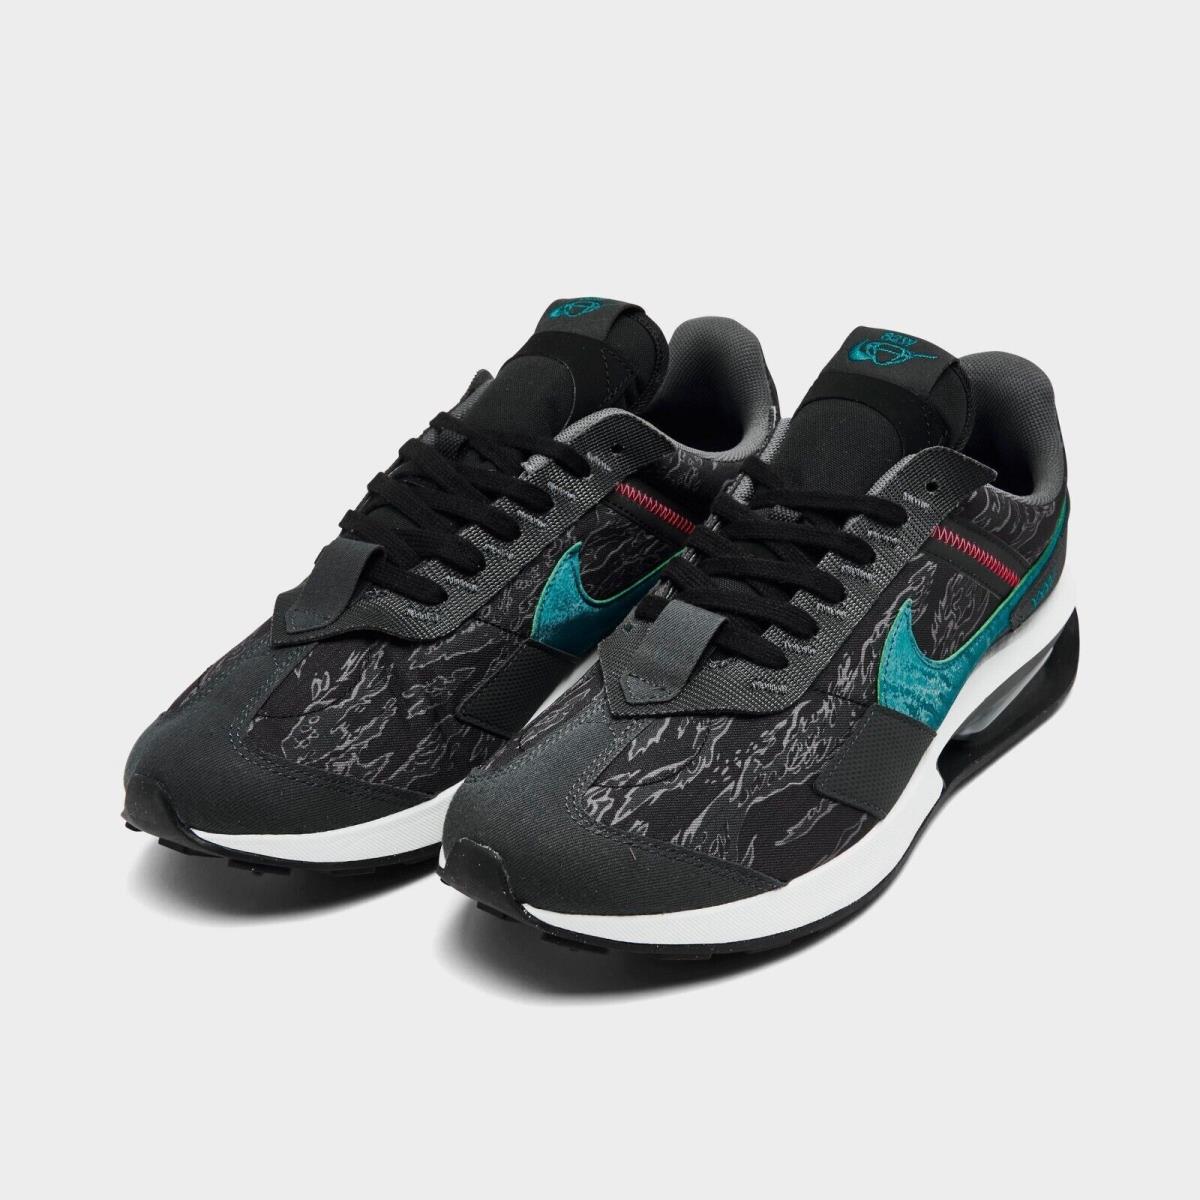 Nike Air Max Pre-day SE Casual Shoes Black / Blue Sz 9.5 DH4642 001